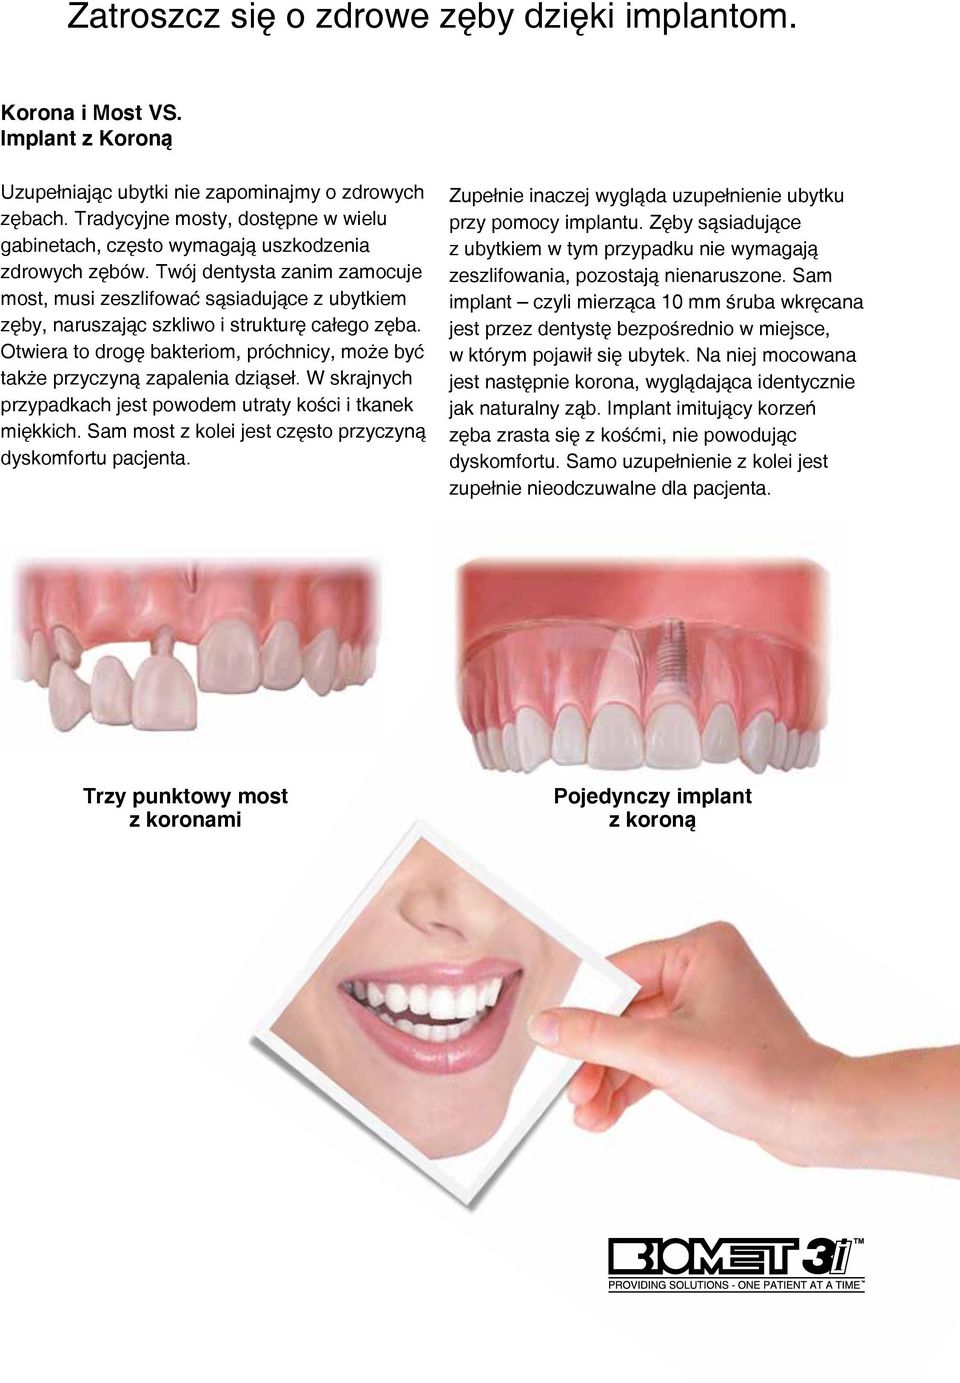 Twój dentysta zanim zamocuje most, musi zeszlifować sąsiadujące z ubytkiem zęby, naruszając szkliwo i strukturę całego zęba.